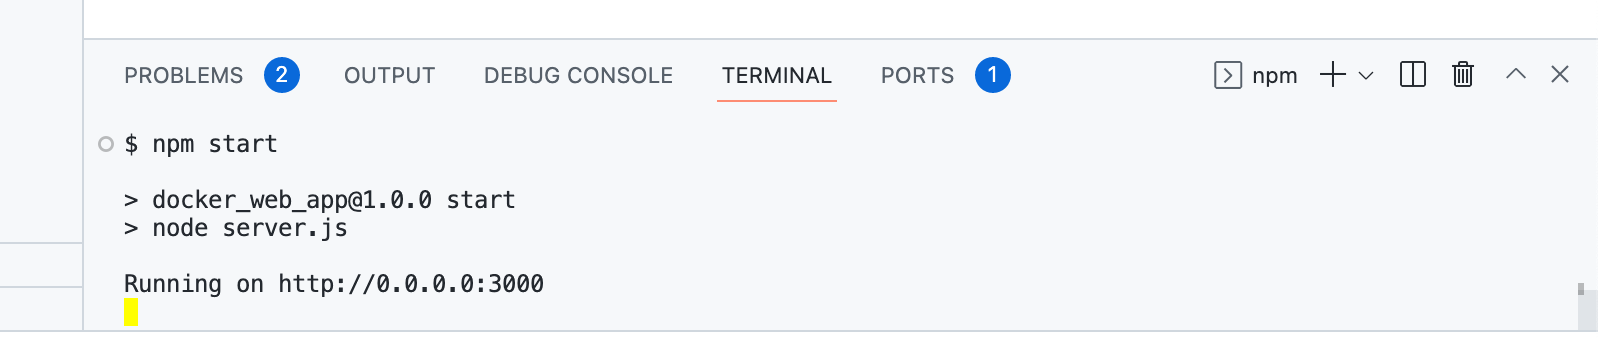 Captura de tela da execução de 'npm start' no terminal